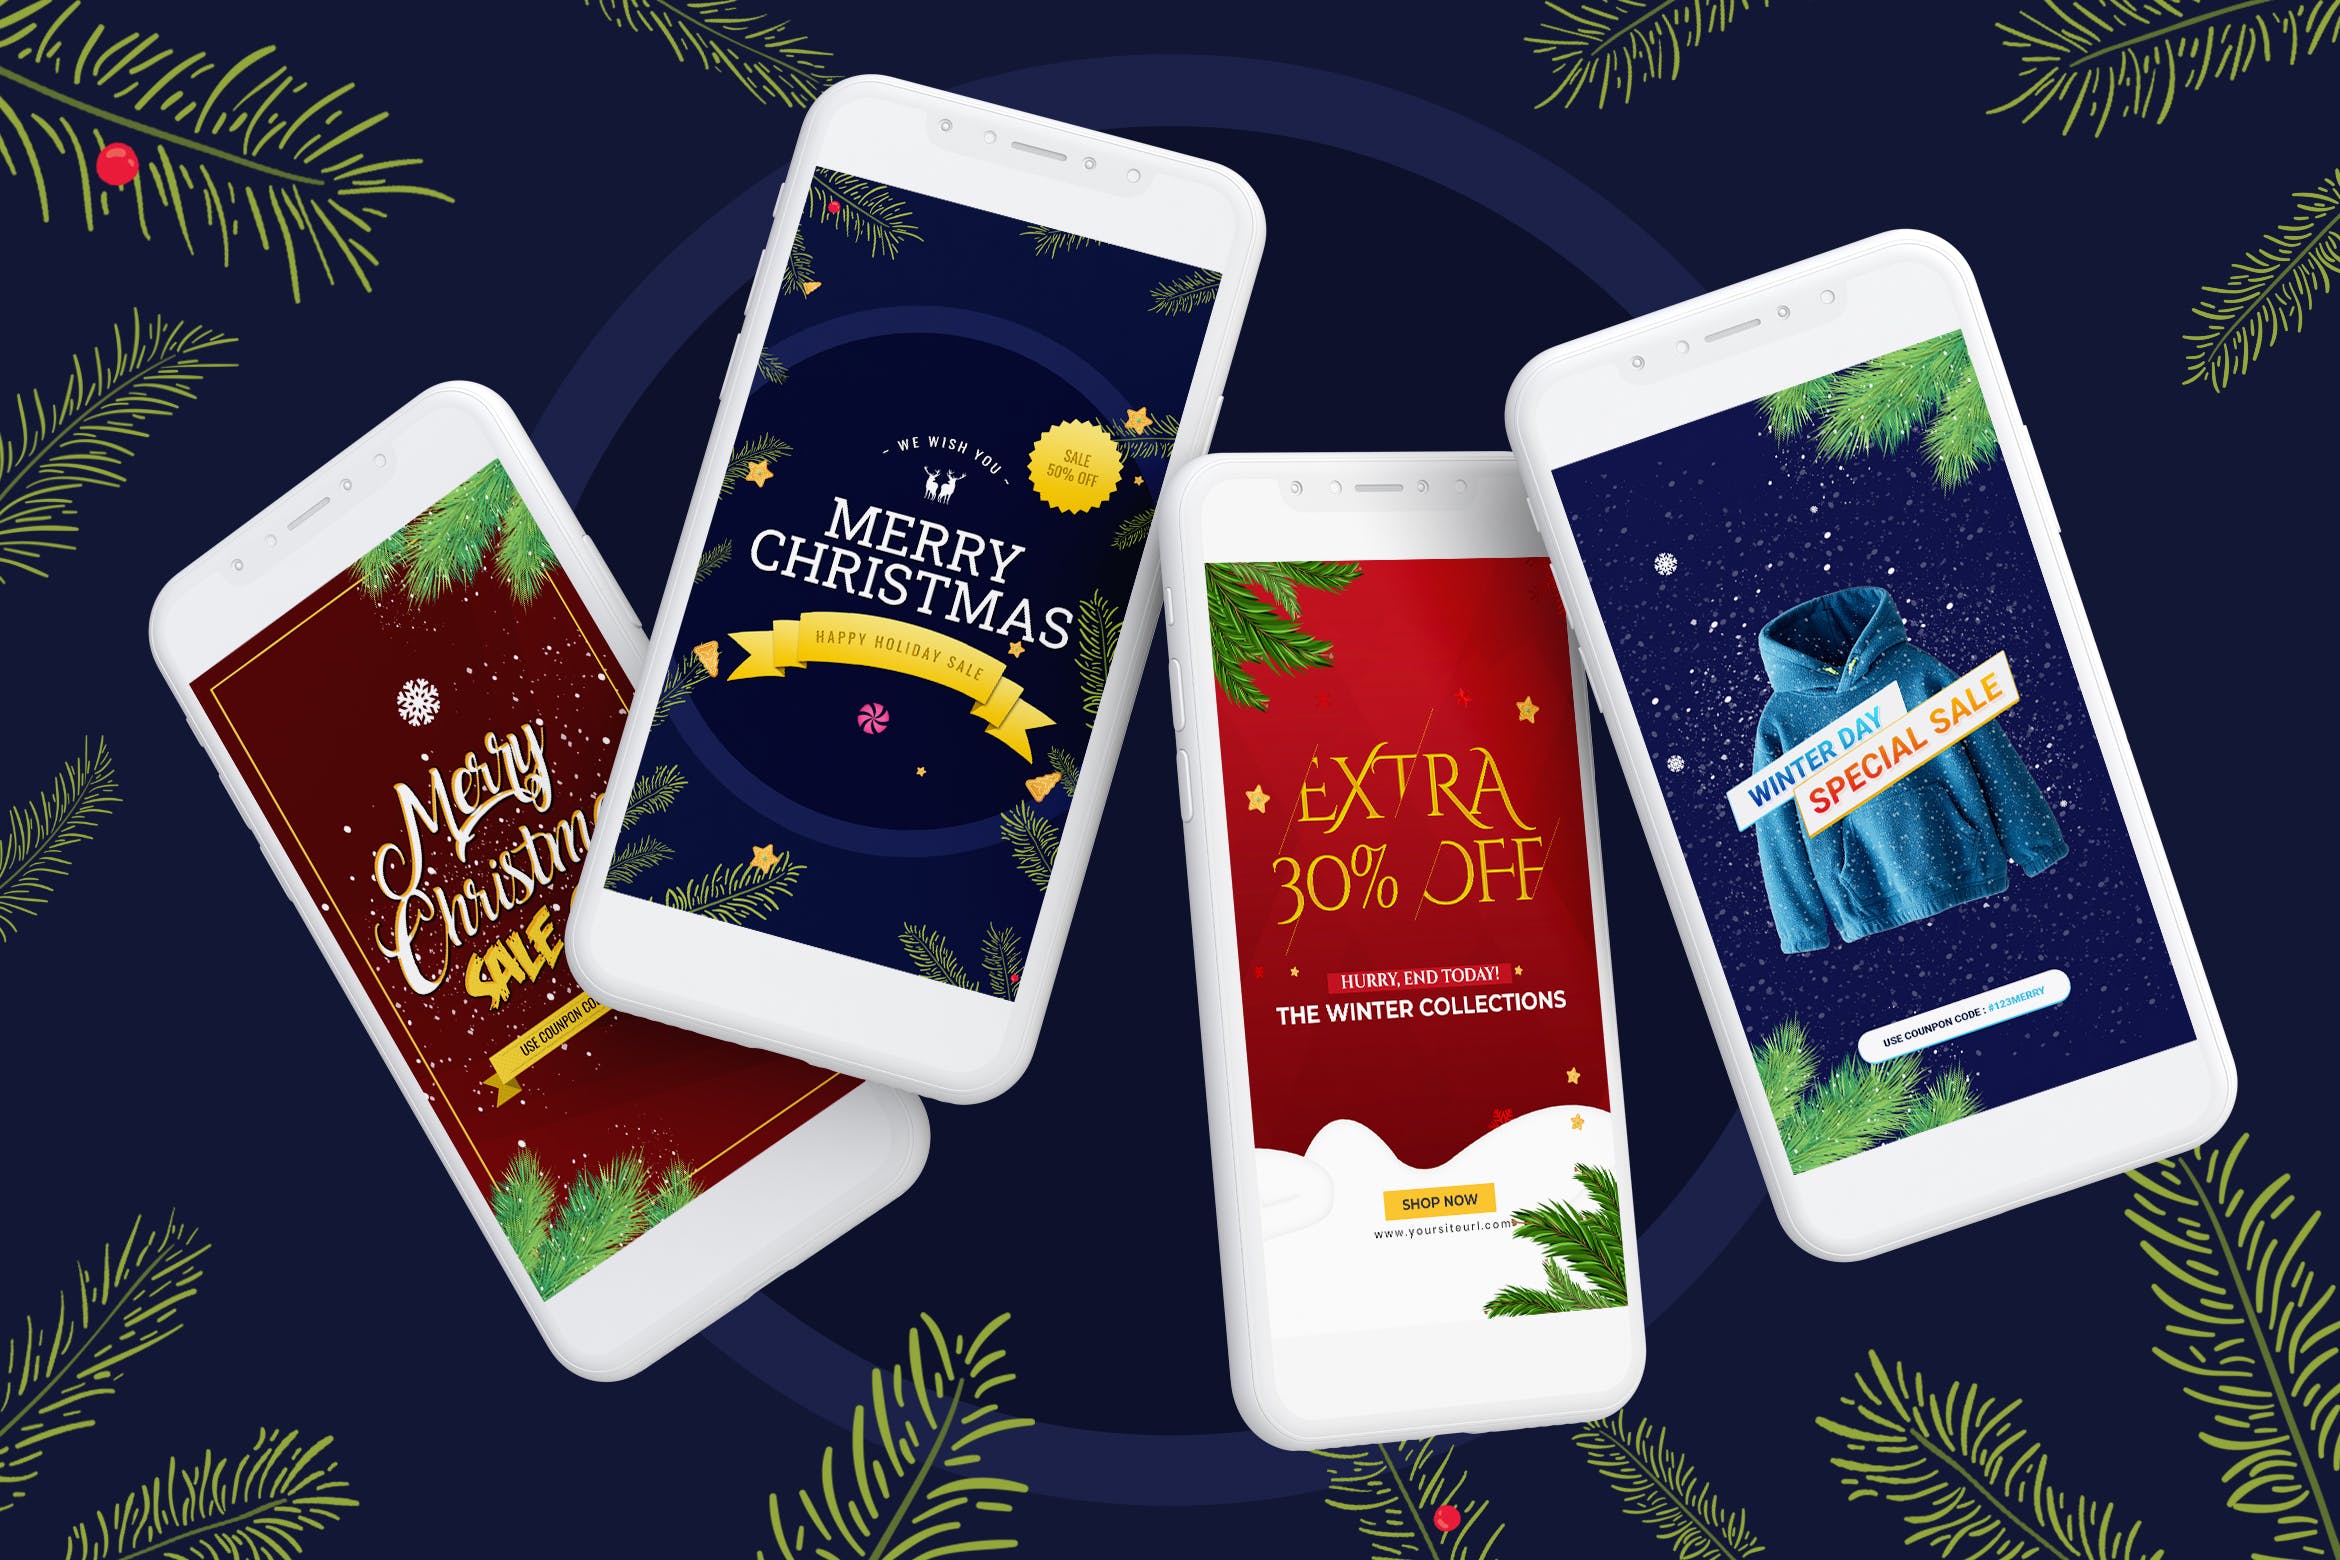 圣诞节节日促销Instagram活动宣传社交媒体模板 Merry Christmas Instagram Stories设计素材模板